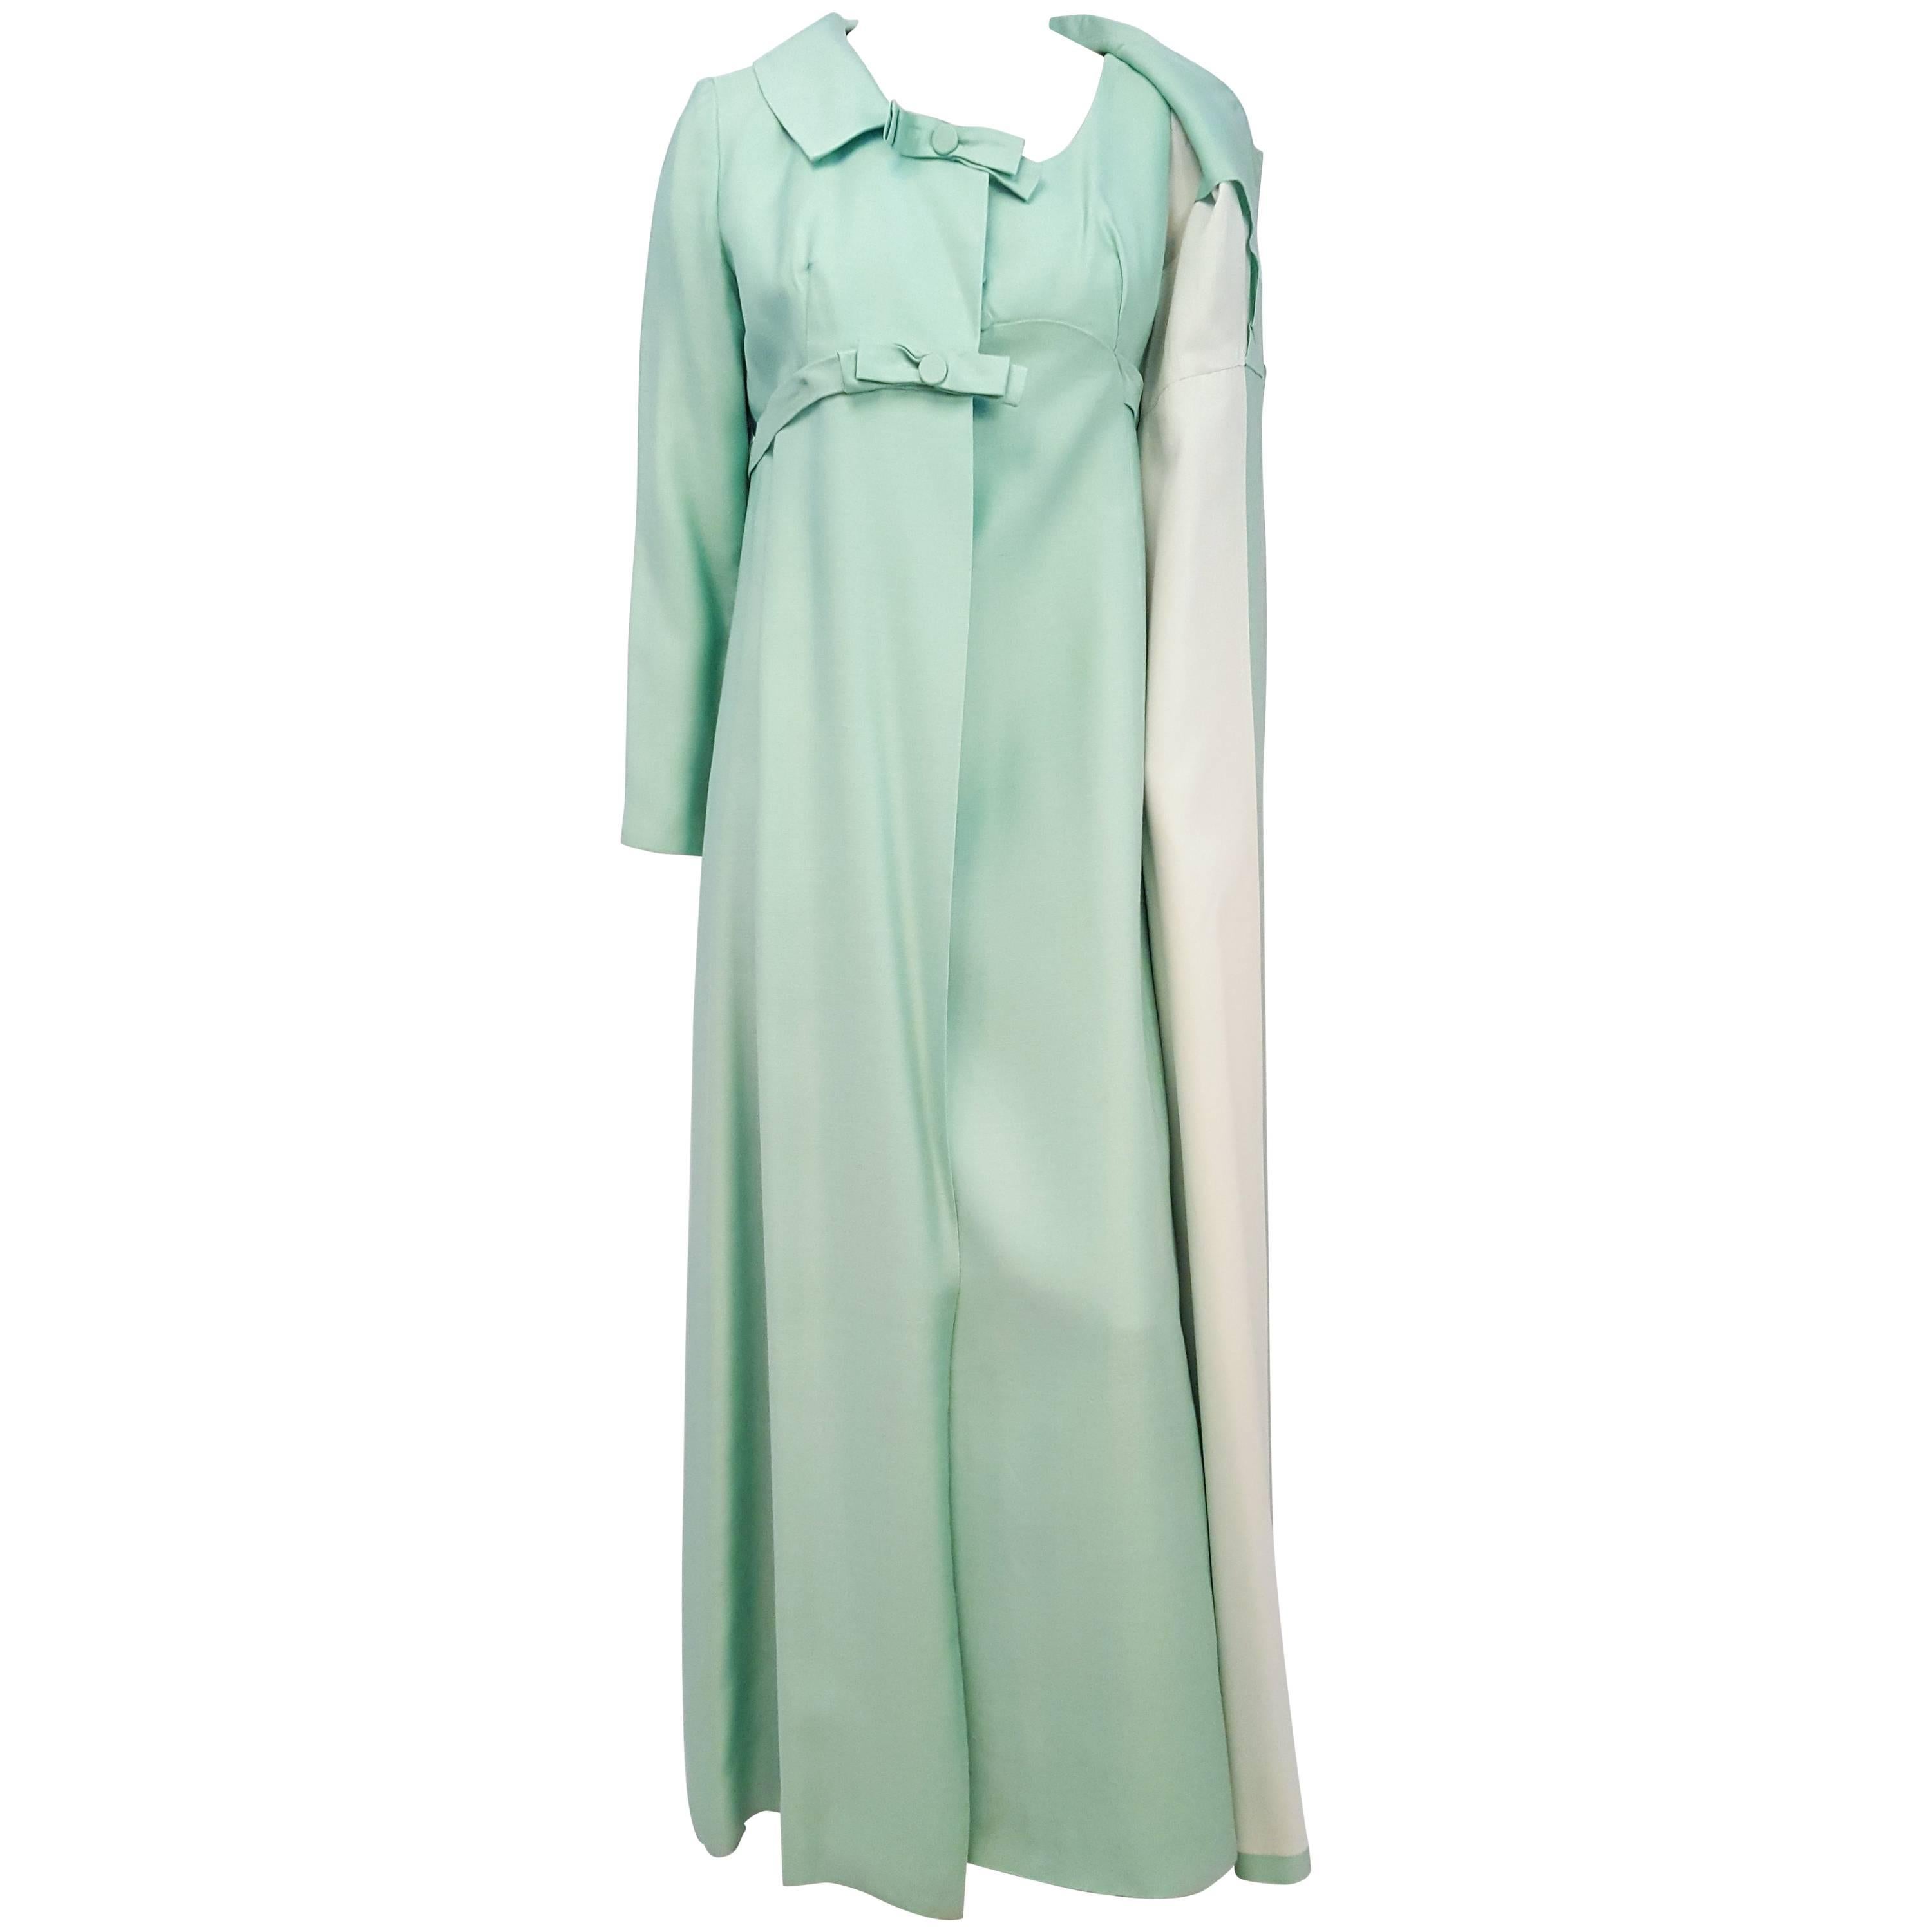 Emma Domb ensemble robe et manteau de soirée vert menthe des années 60